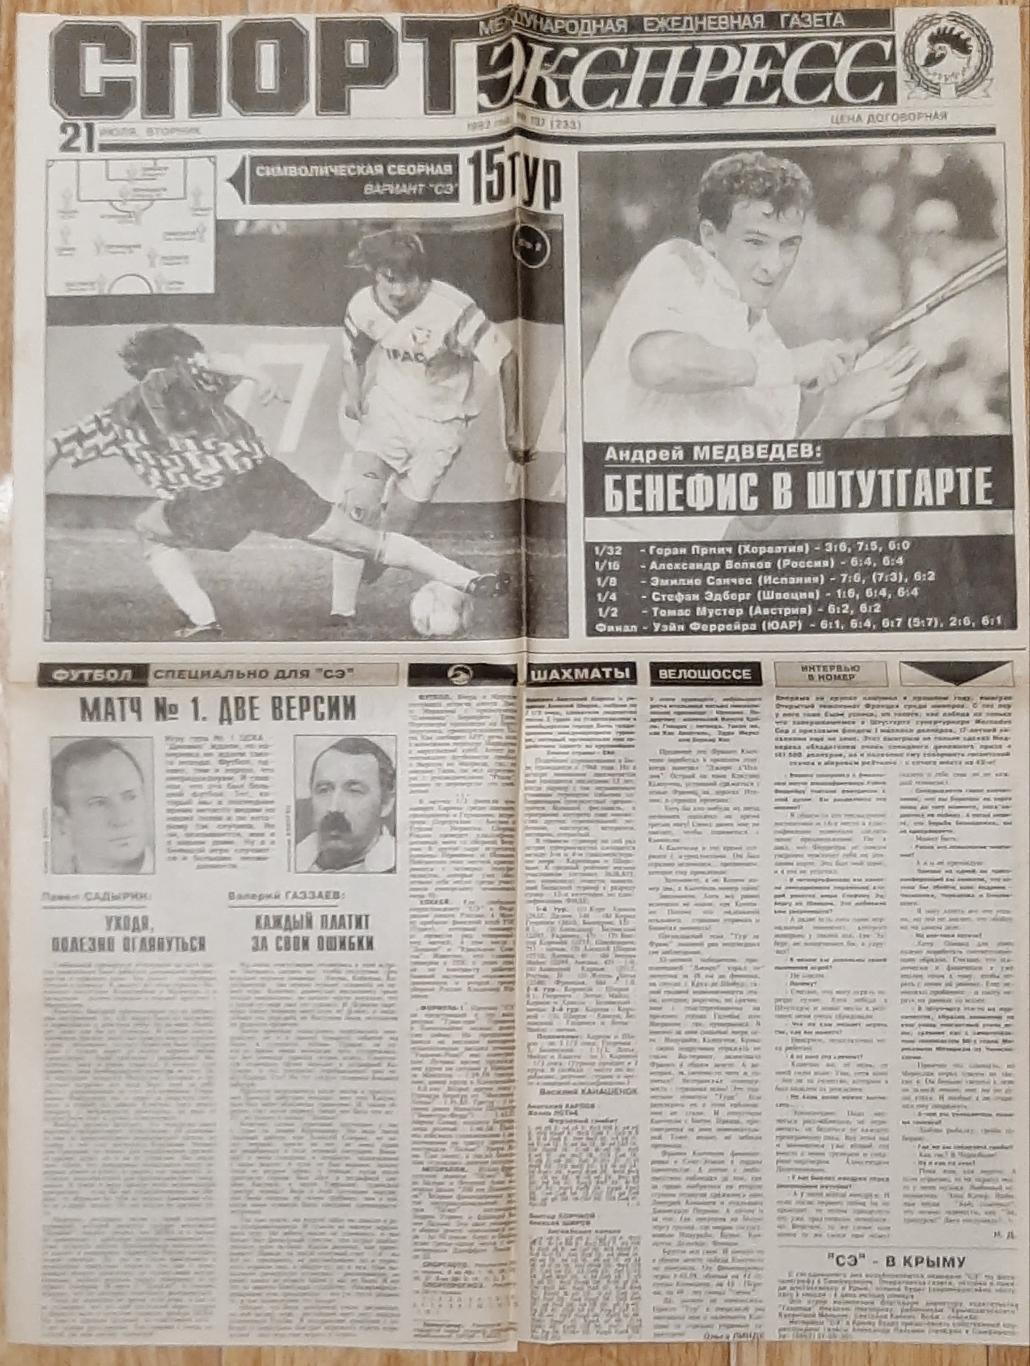 Вирізка з газети Спорт експрес #137 (21 липня 1992)